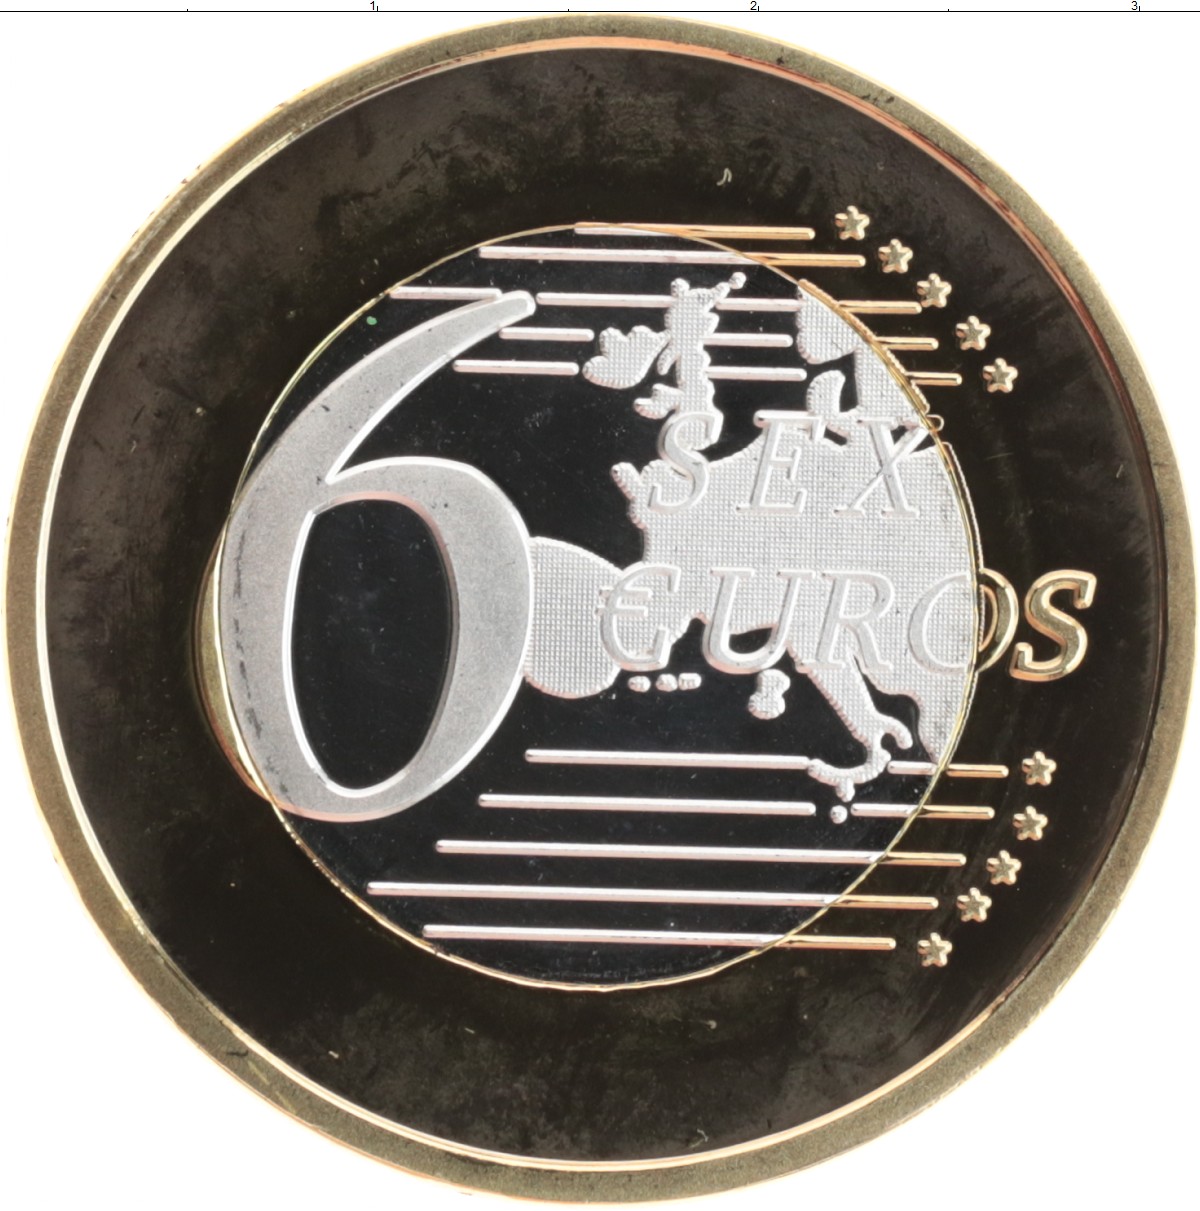 6 СЕКС ЕВРО - 26, сувенирная монета